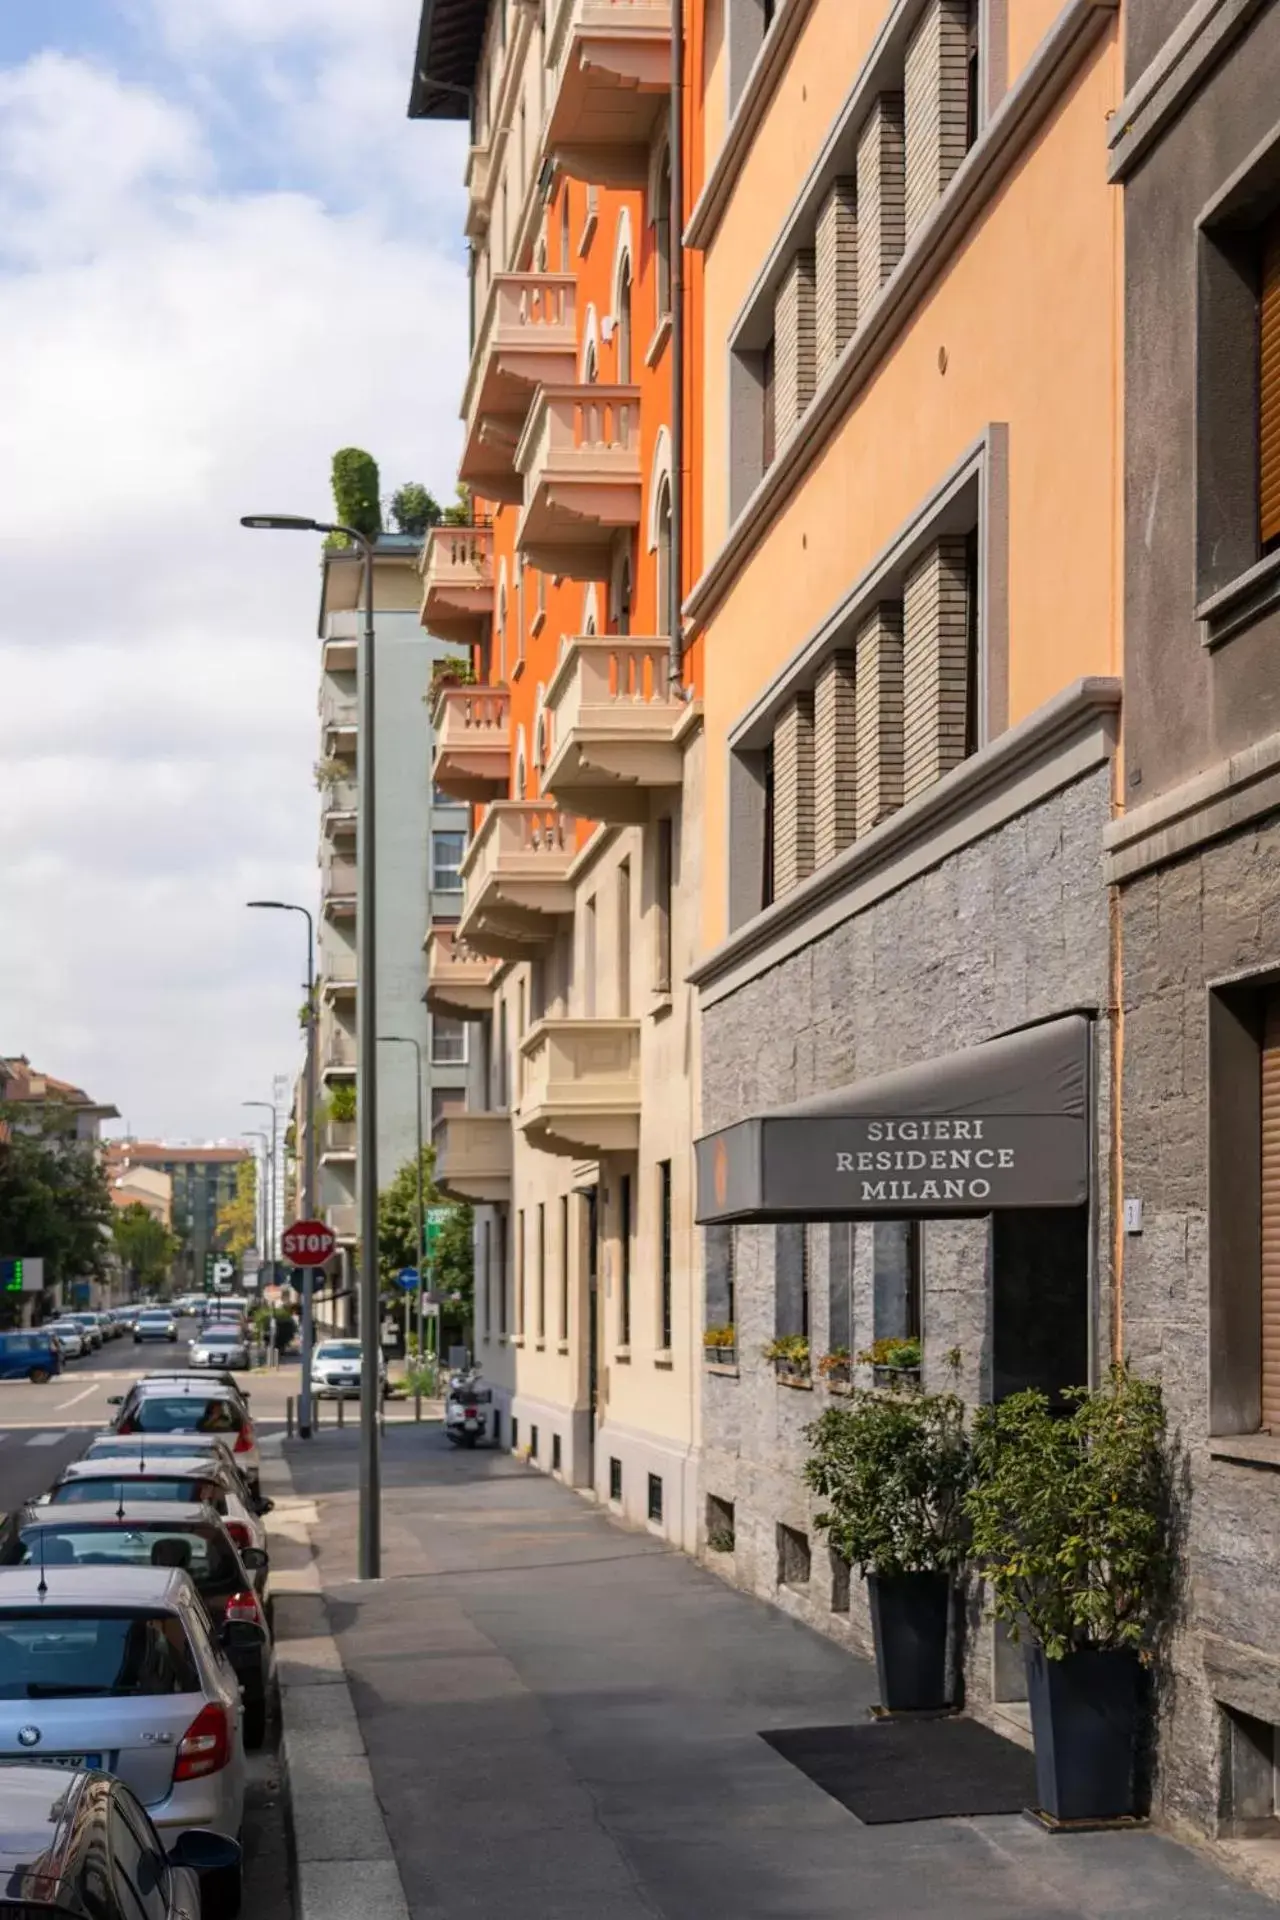 Facade/entrance in Sigieri Residence Milano